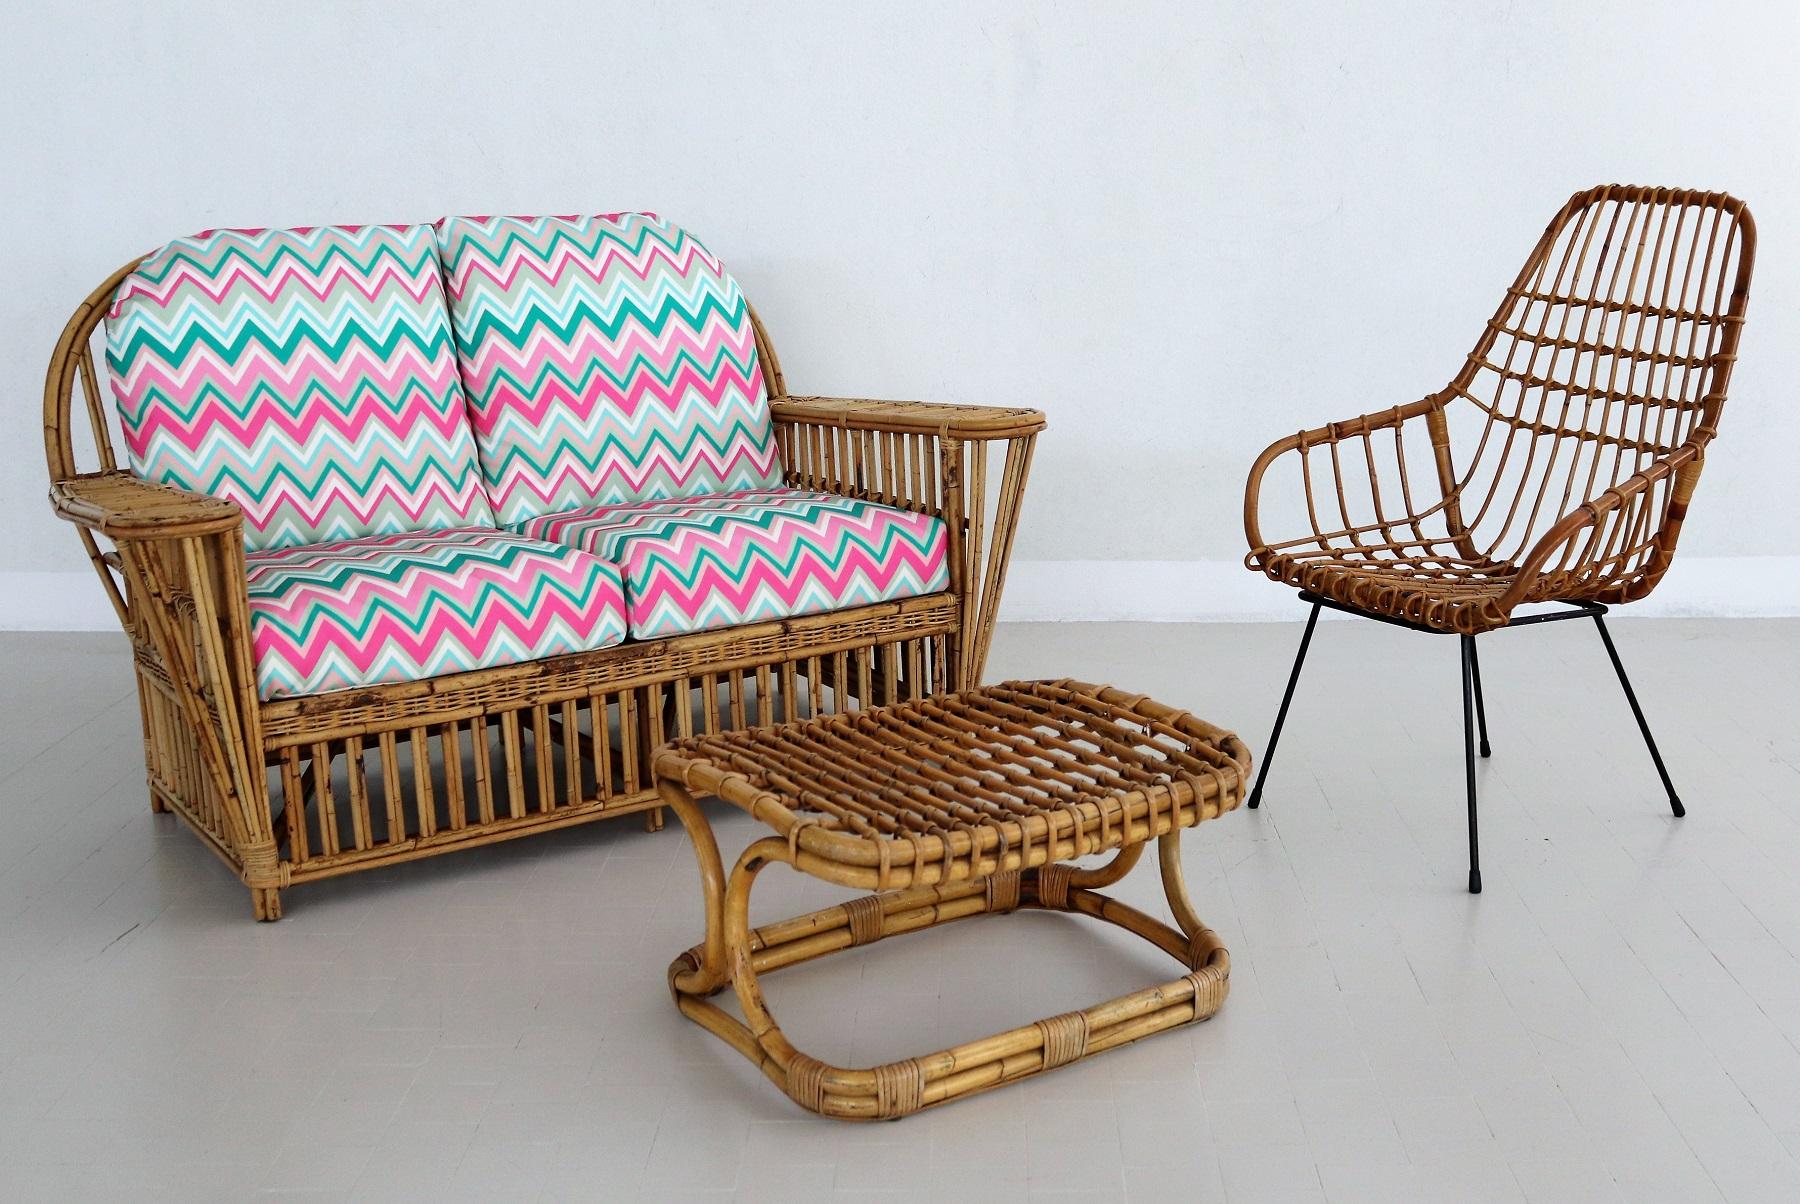 Magnifique canapé à deux places entièrement réalisé en bambou et en rotin en Italie, années 1960/1970.
Le canapé est dans un état presque excellent depuis qu'il a été placé dans la maison précédente.
Les coussins ont été garnis d'un nouveau tissu